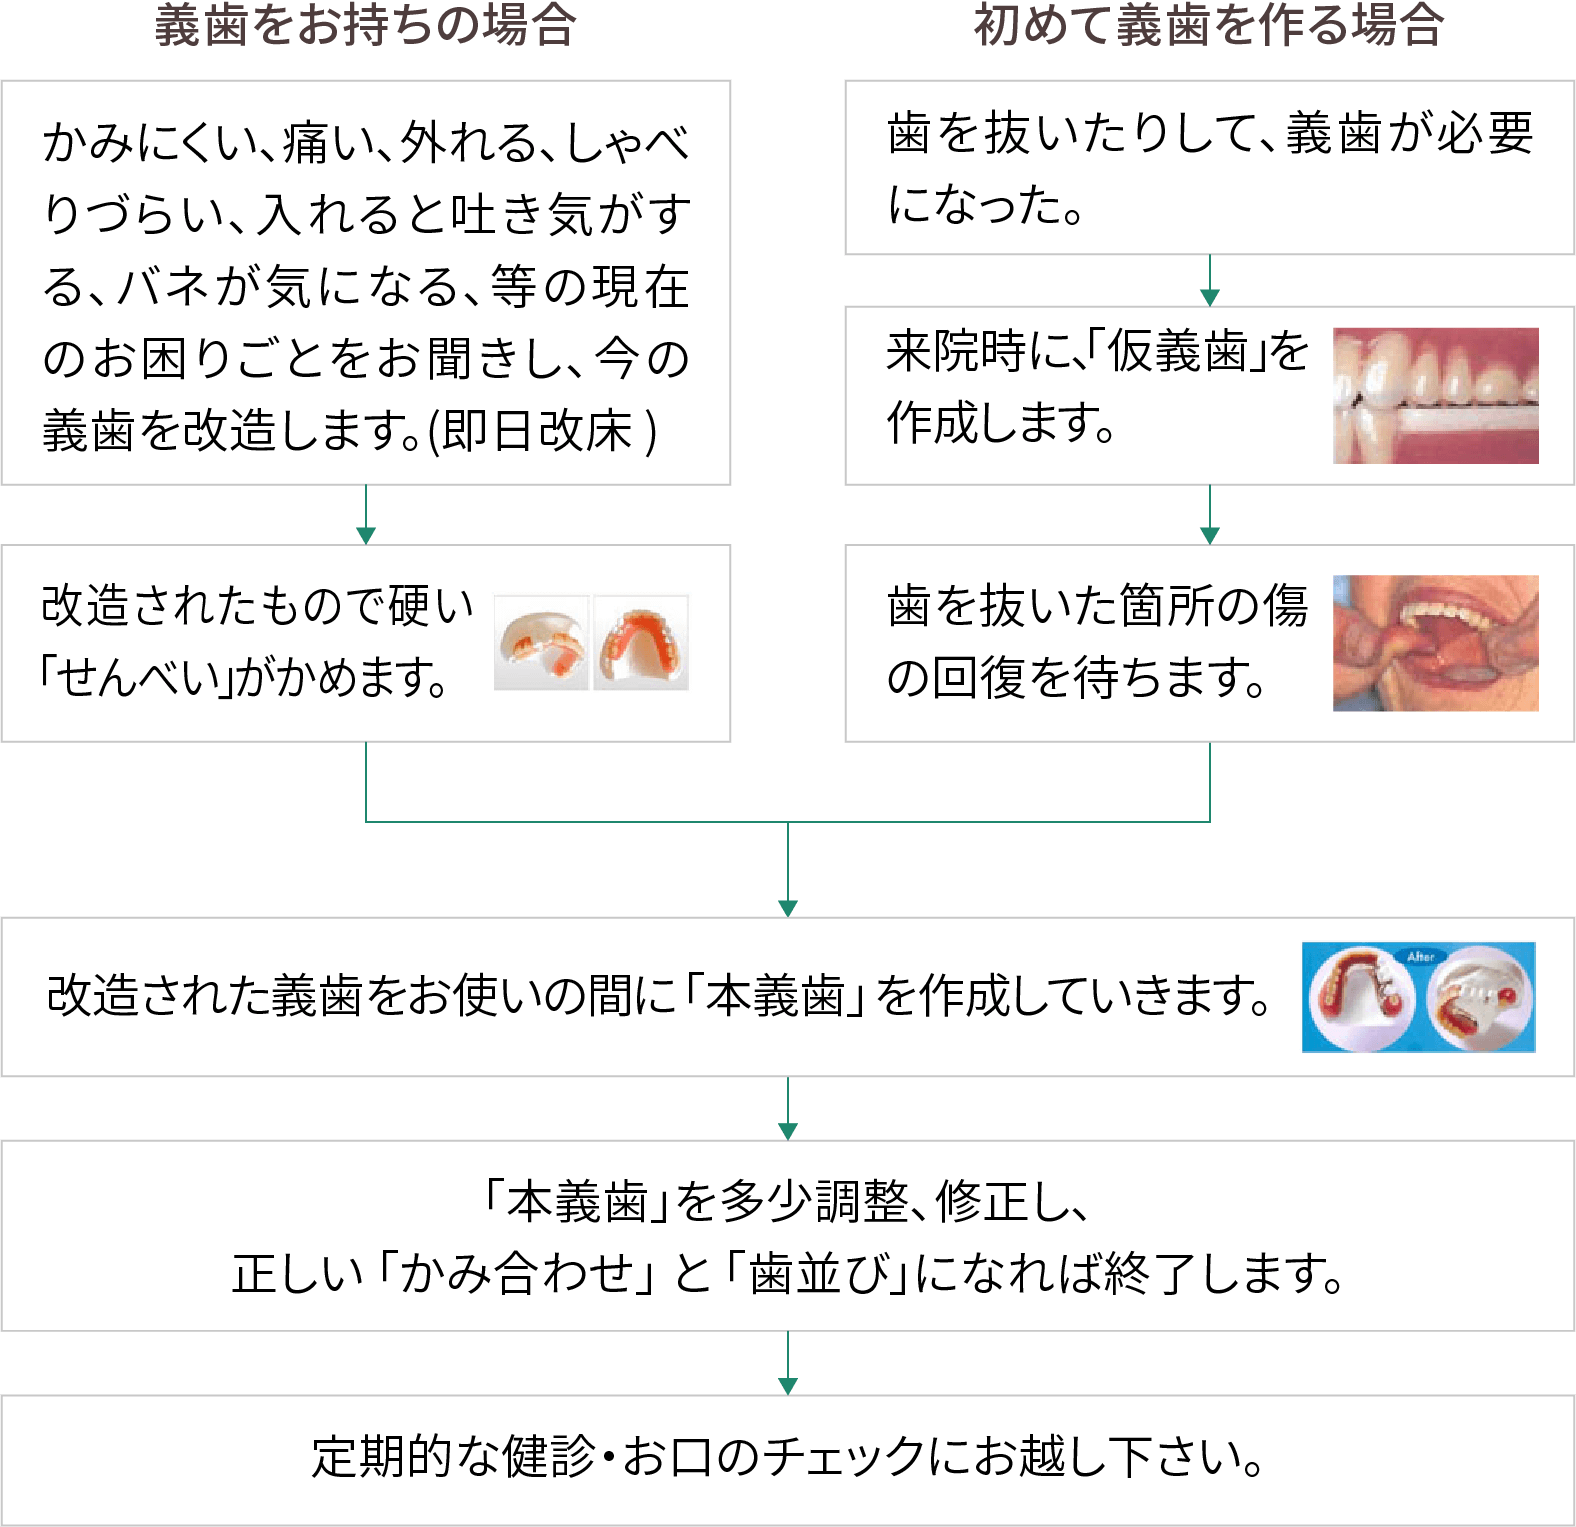 入れ歯治療の流れ図